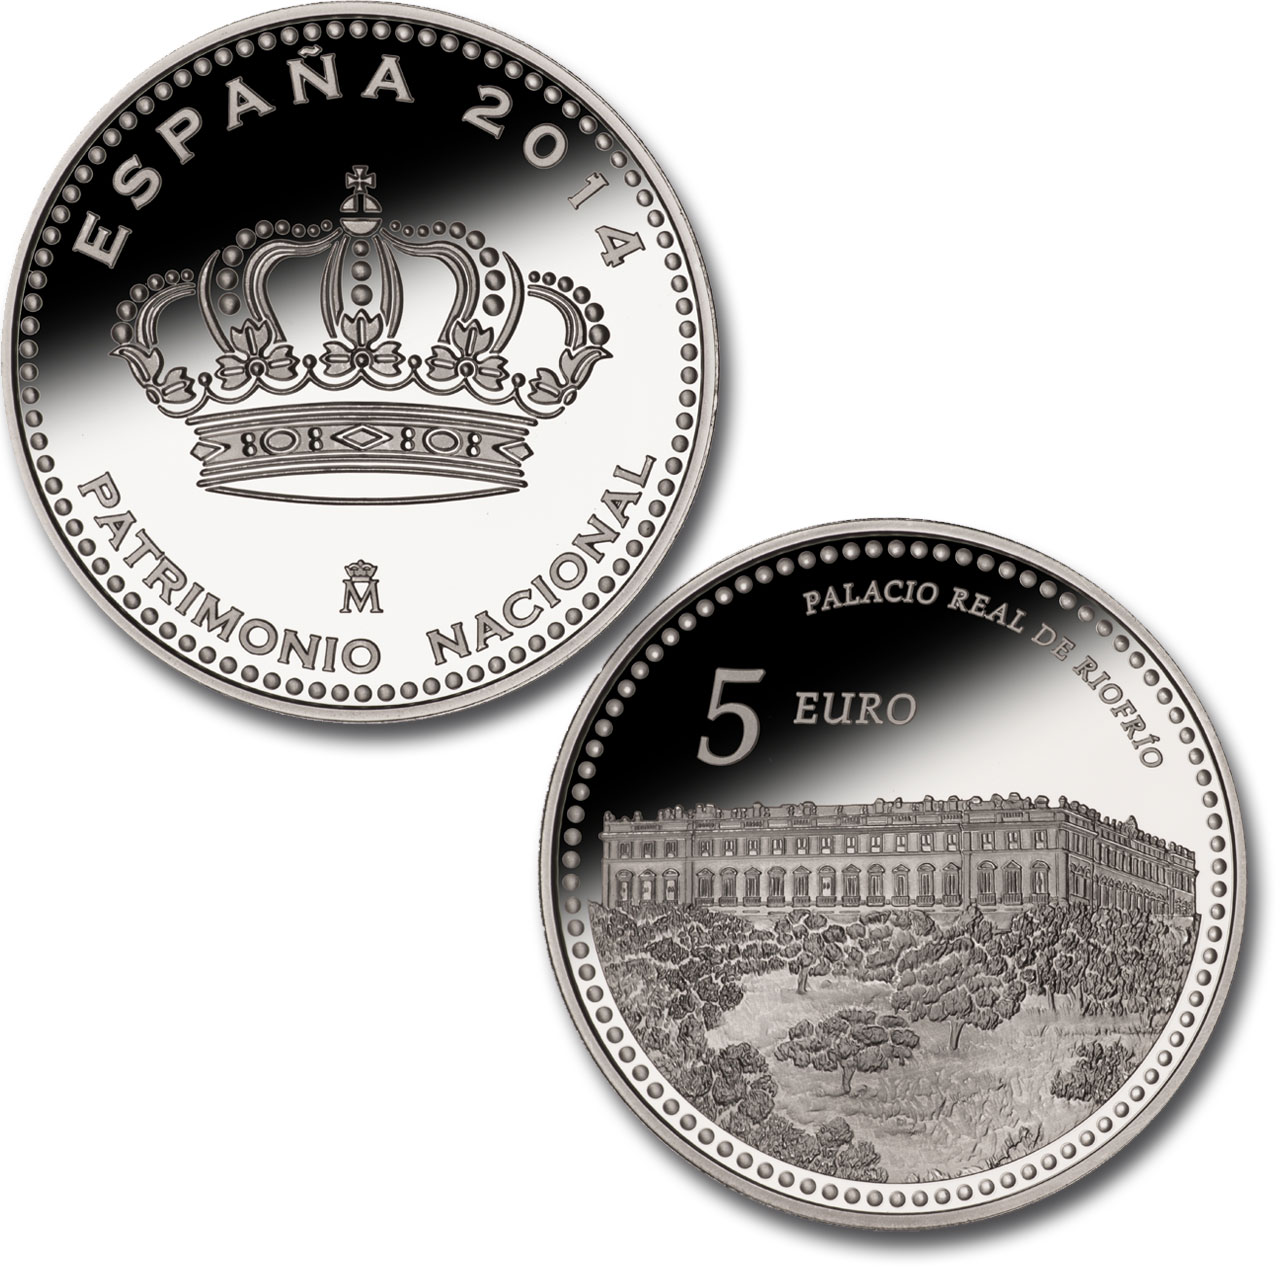 Real Sitio de Aranjuez - 4 reales plata. Haga clic para ver imagen ampliada. Abre en ventana nueva